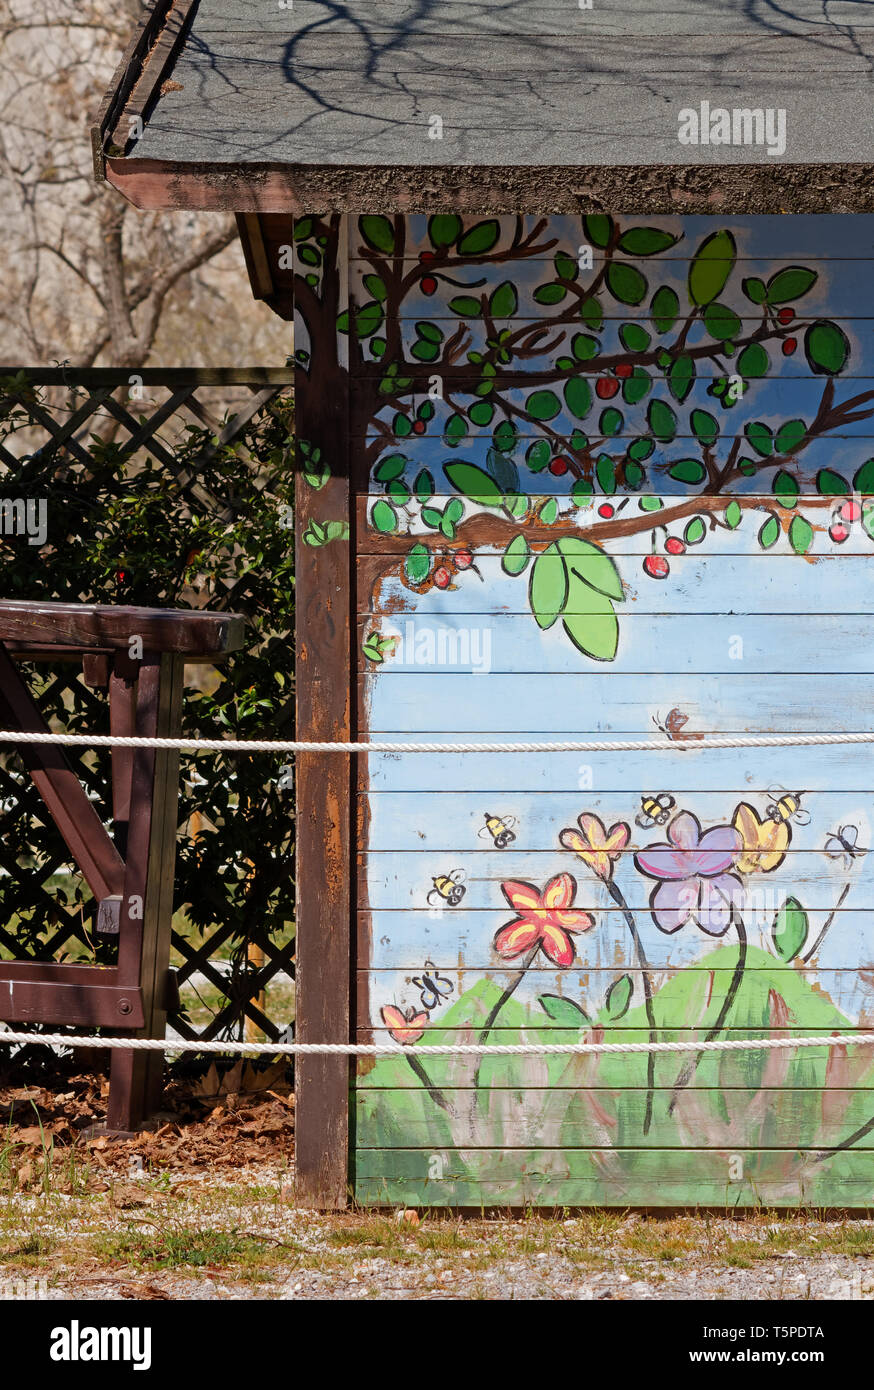 Les fleurs et les branches d'arbres peints sur le mur extérieur d'un chalet en bois Banque D'Images